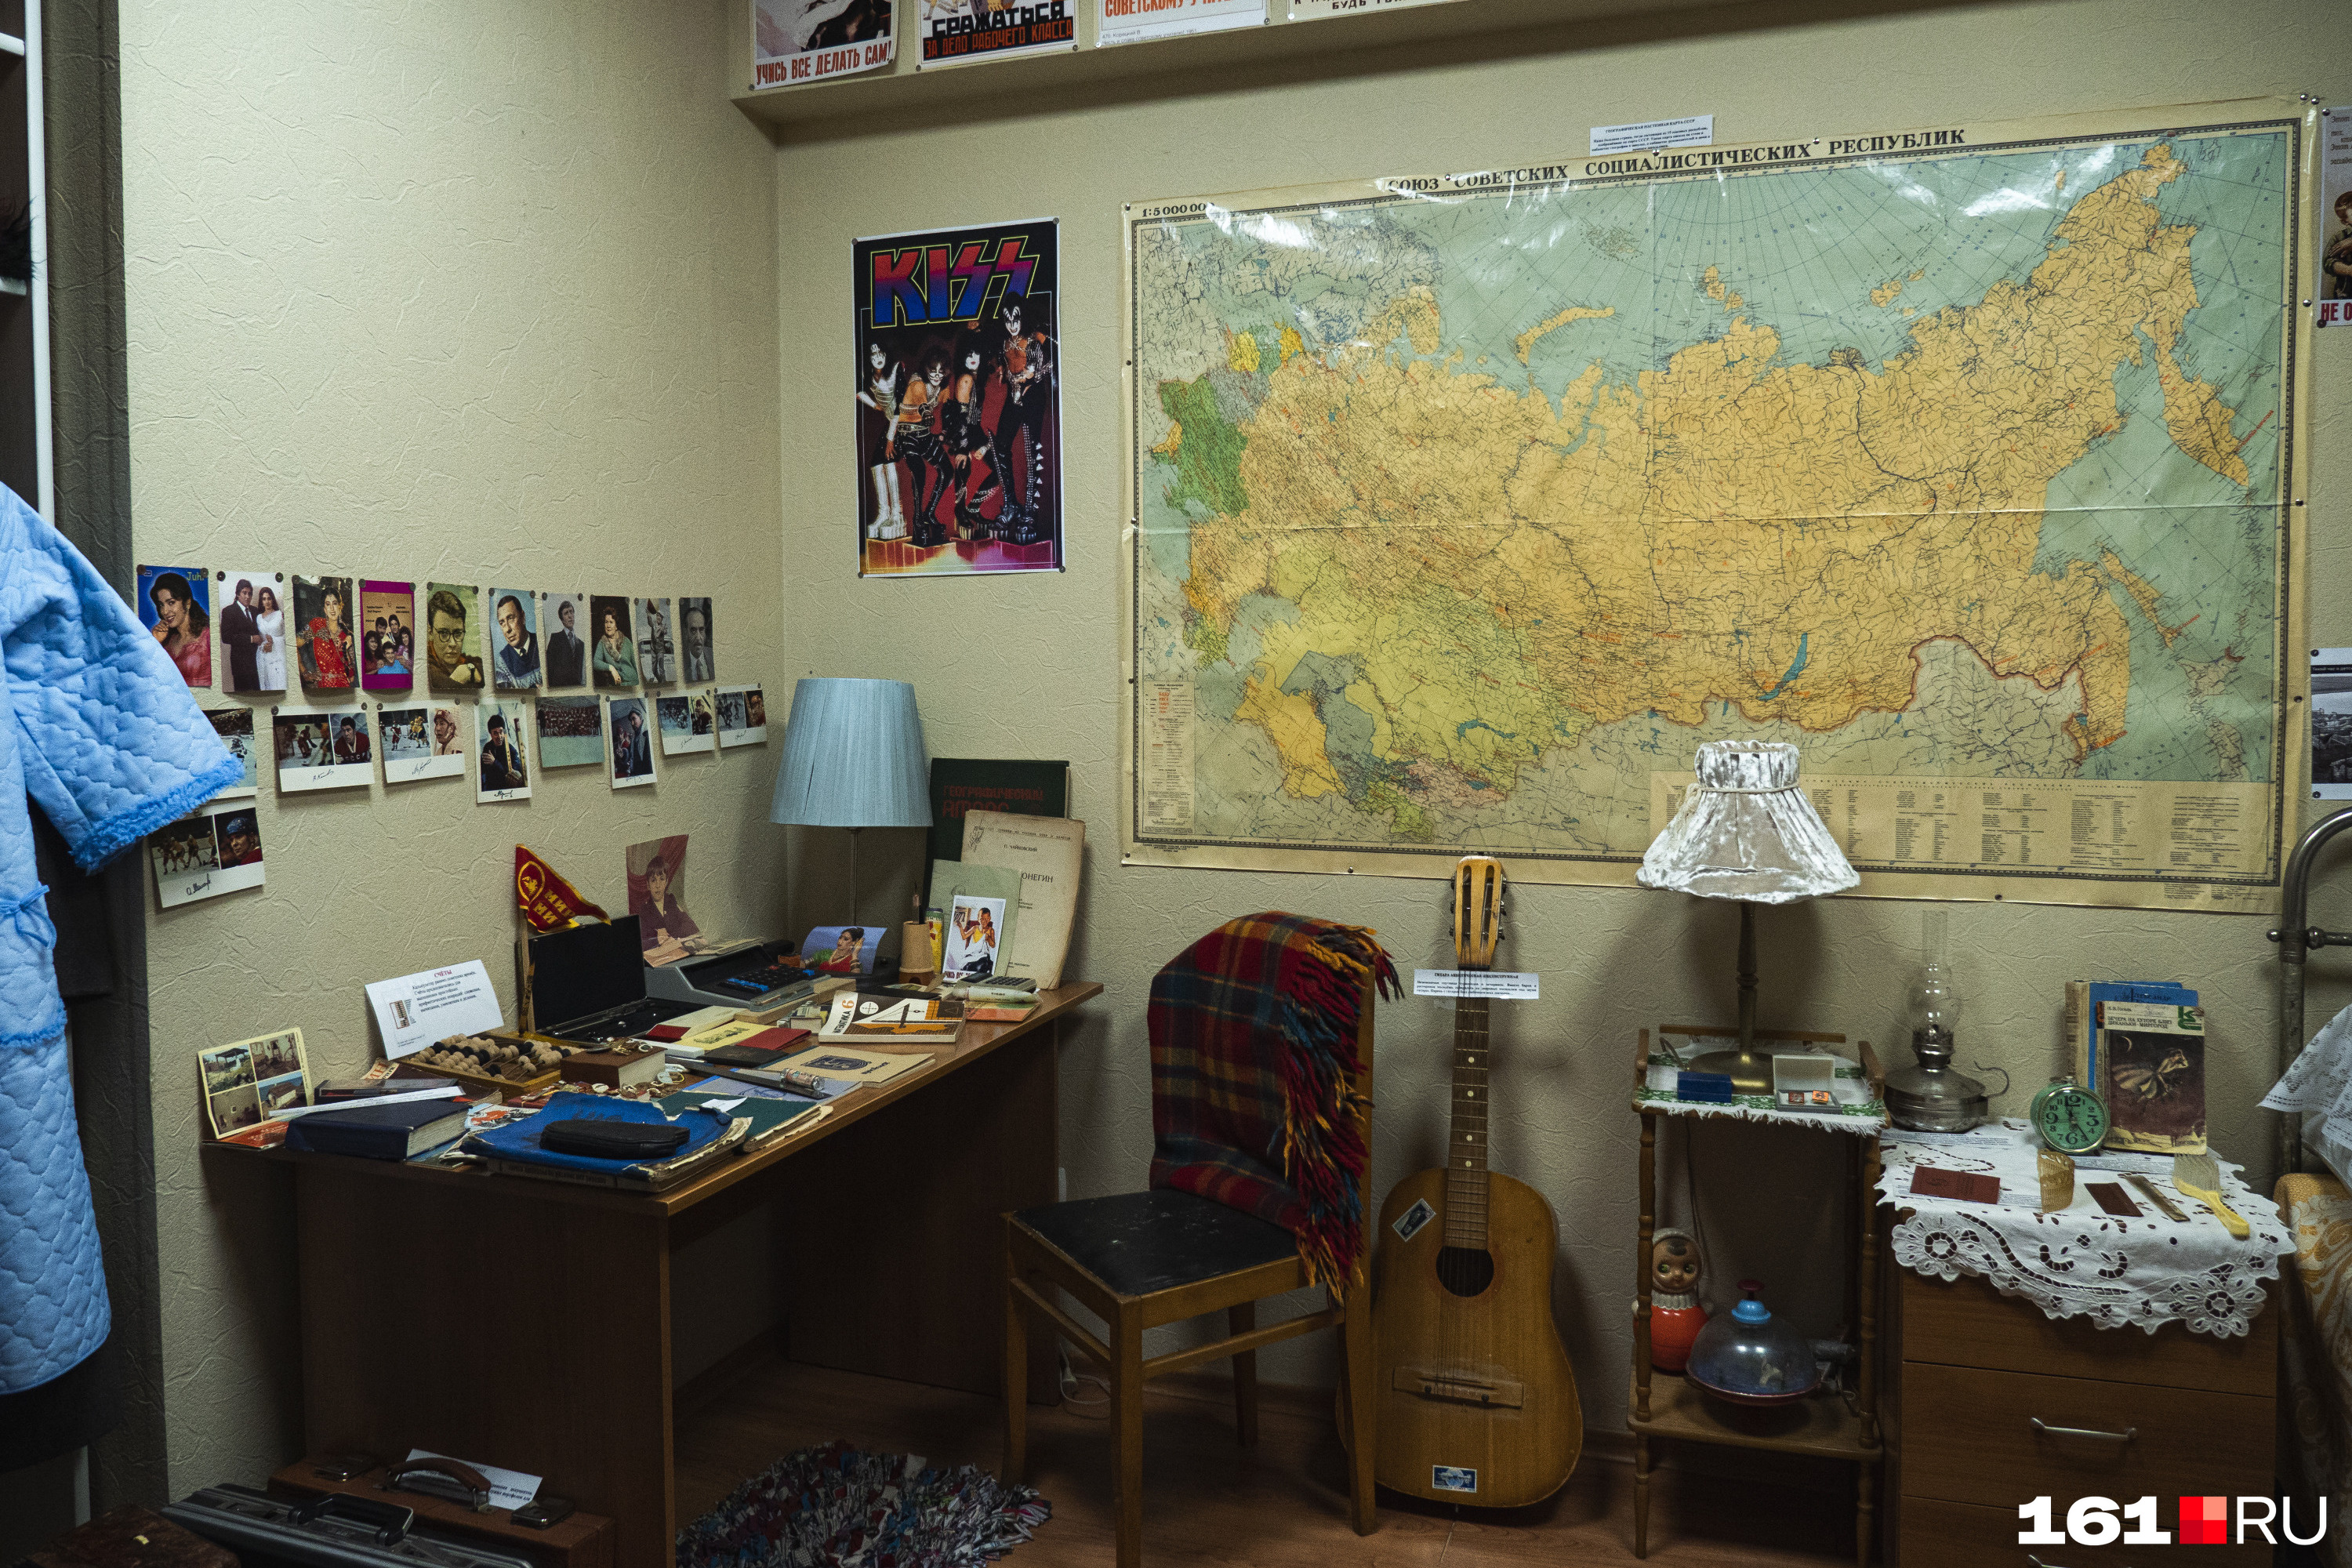 Еще один кадр из спальни. На стене вы видите карту СССР